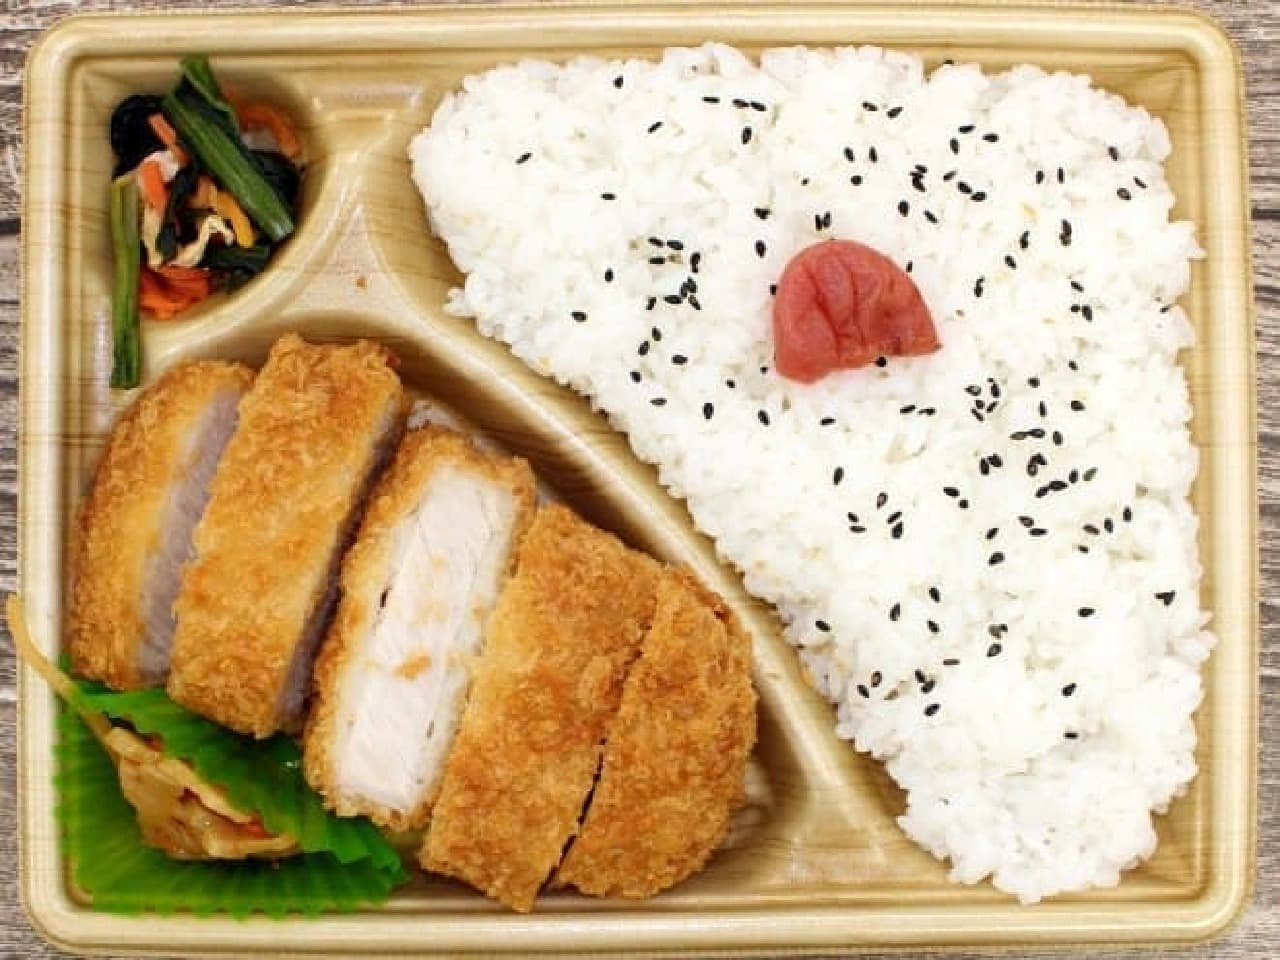 LAWSON "Niigata Koshihikari Aged Loin Tonkatsu Lunchbox